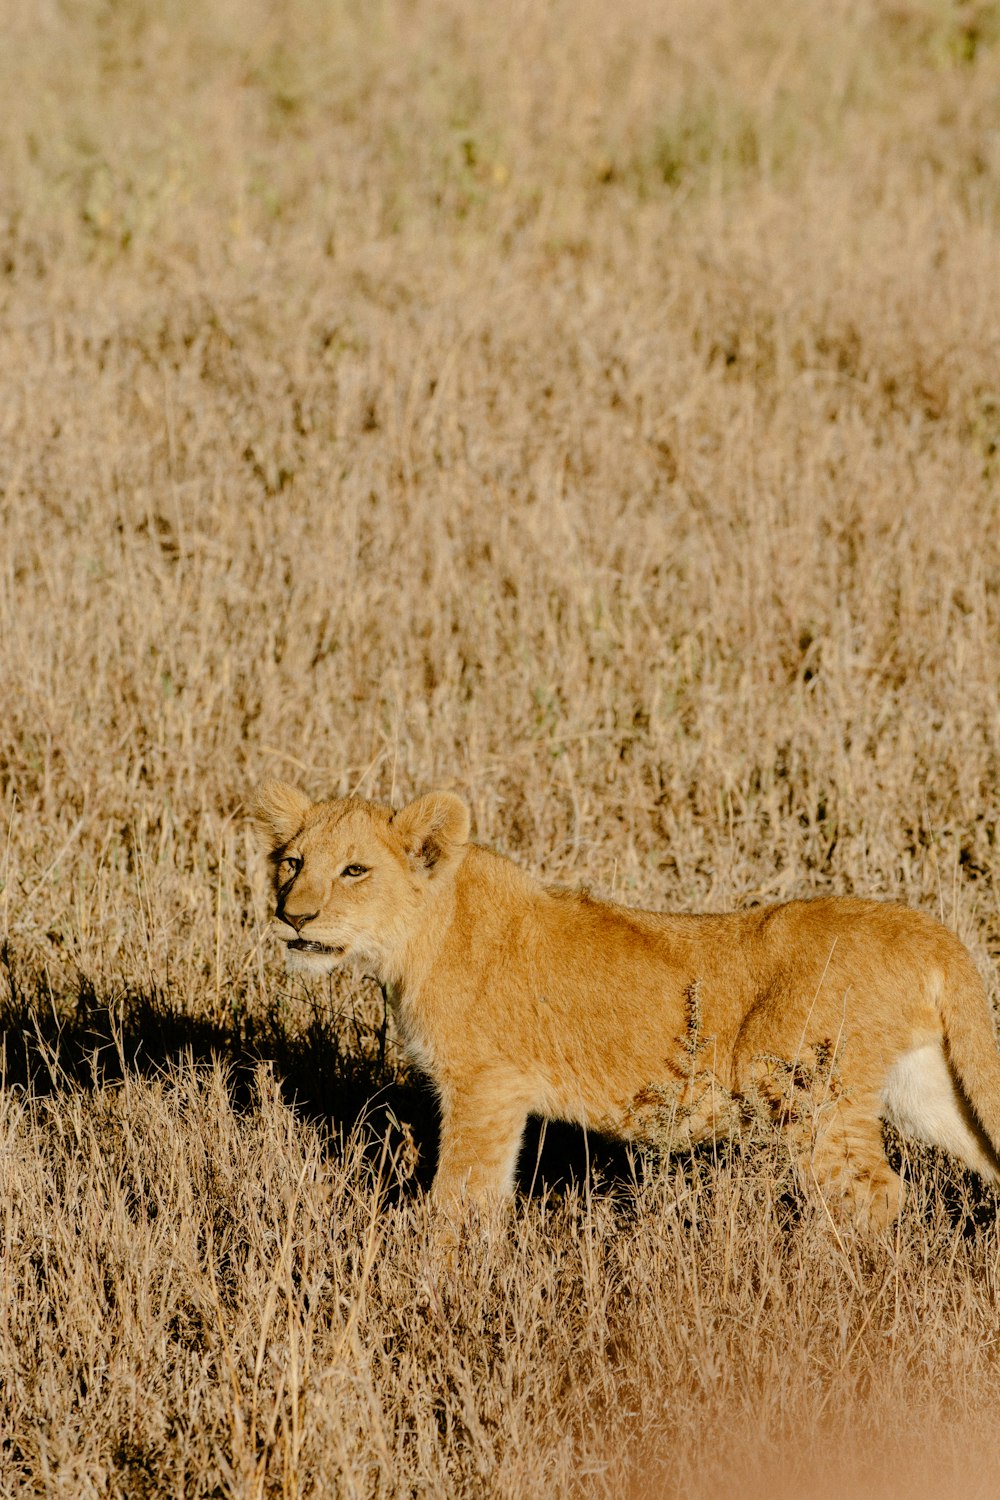 leonessa marrone sul campo di erba marrone durante il giorno